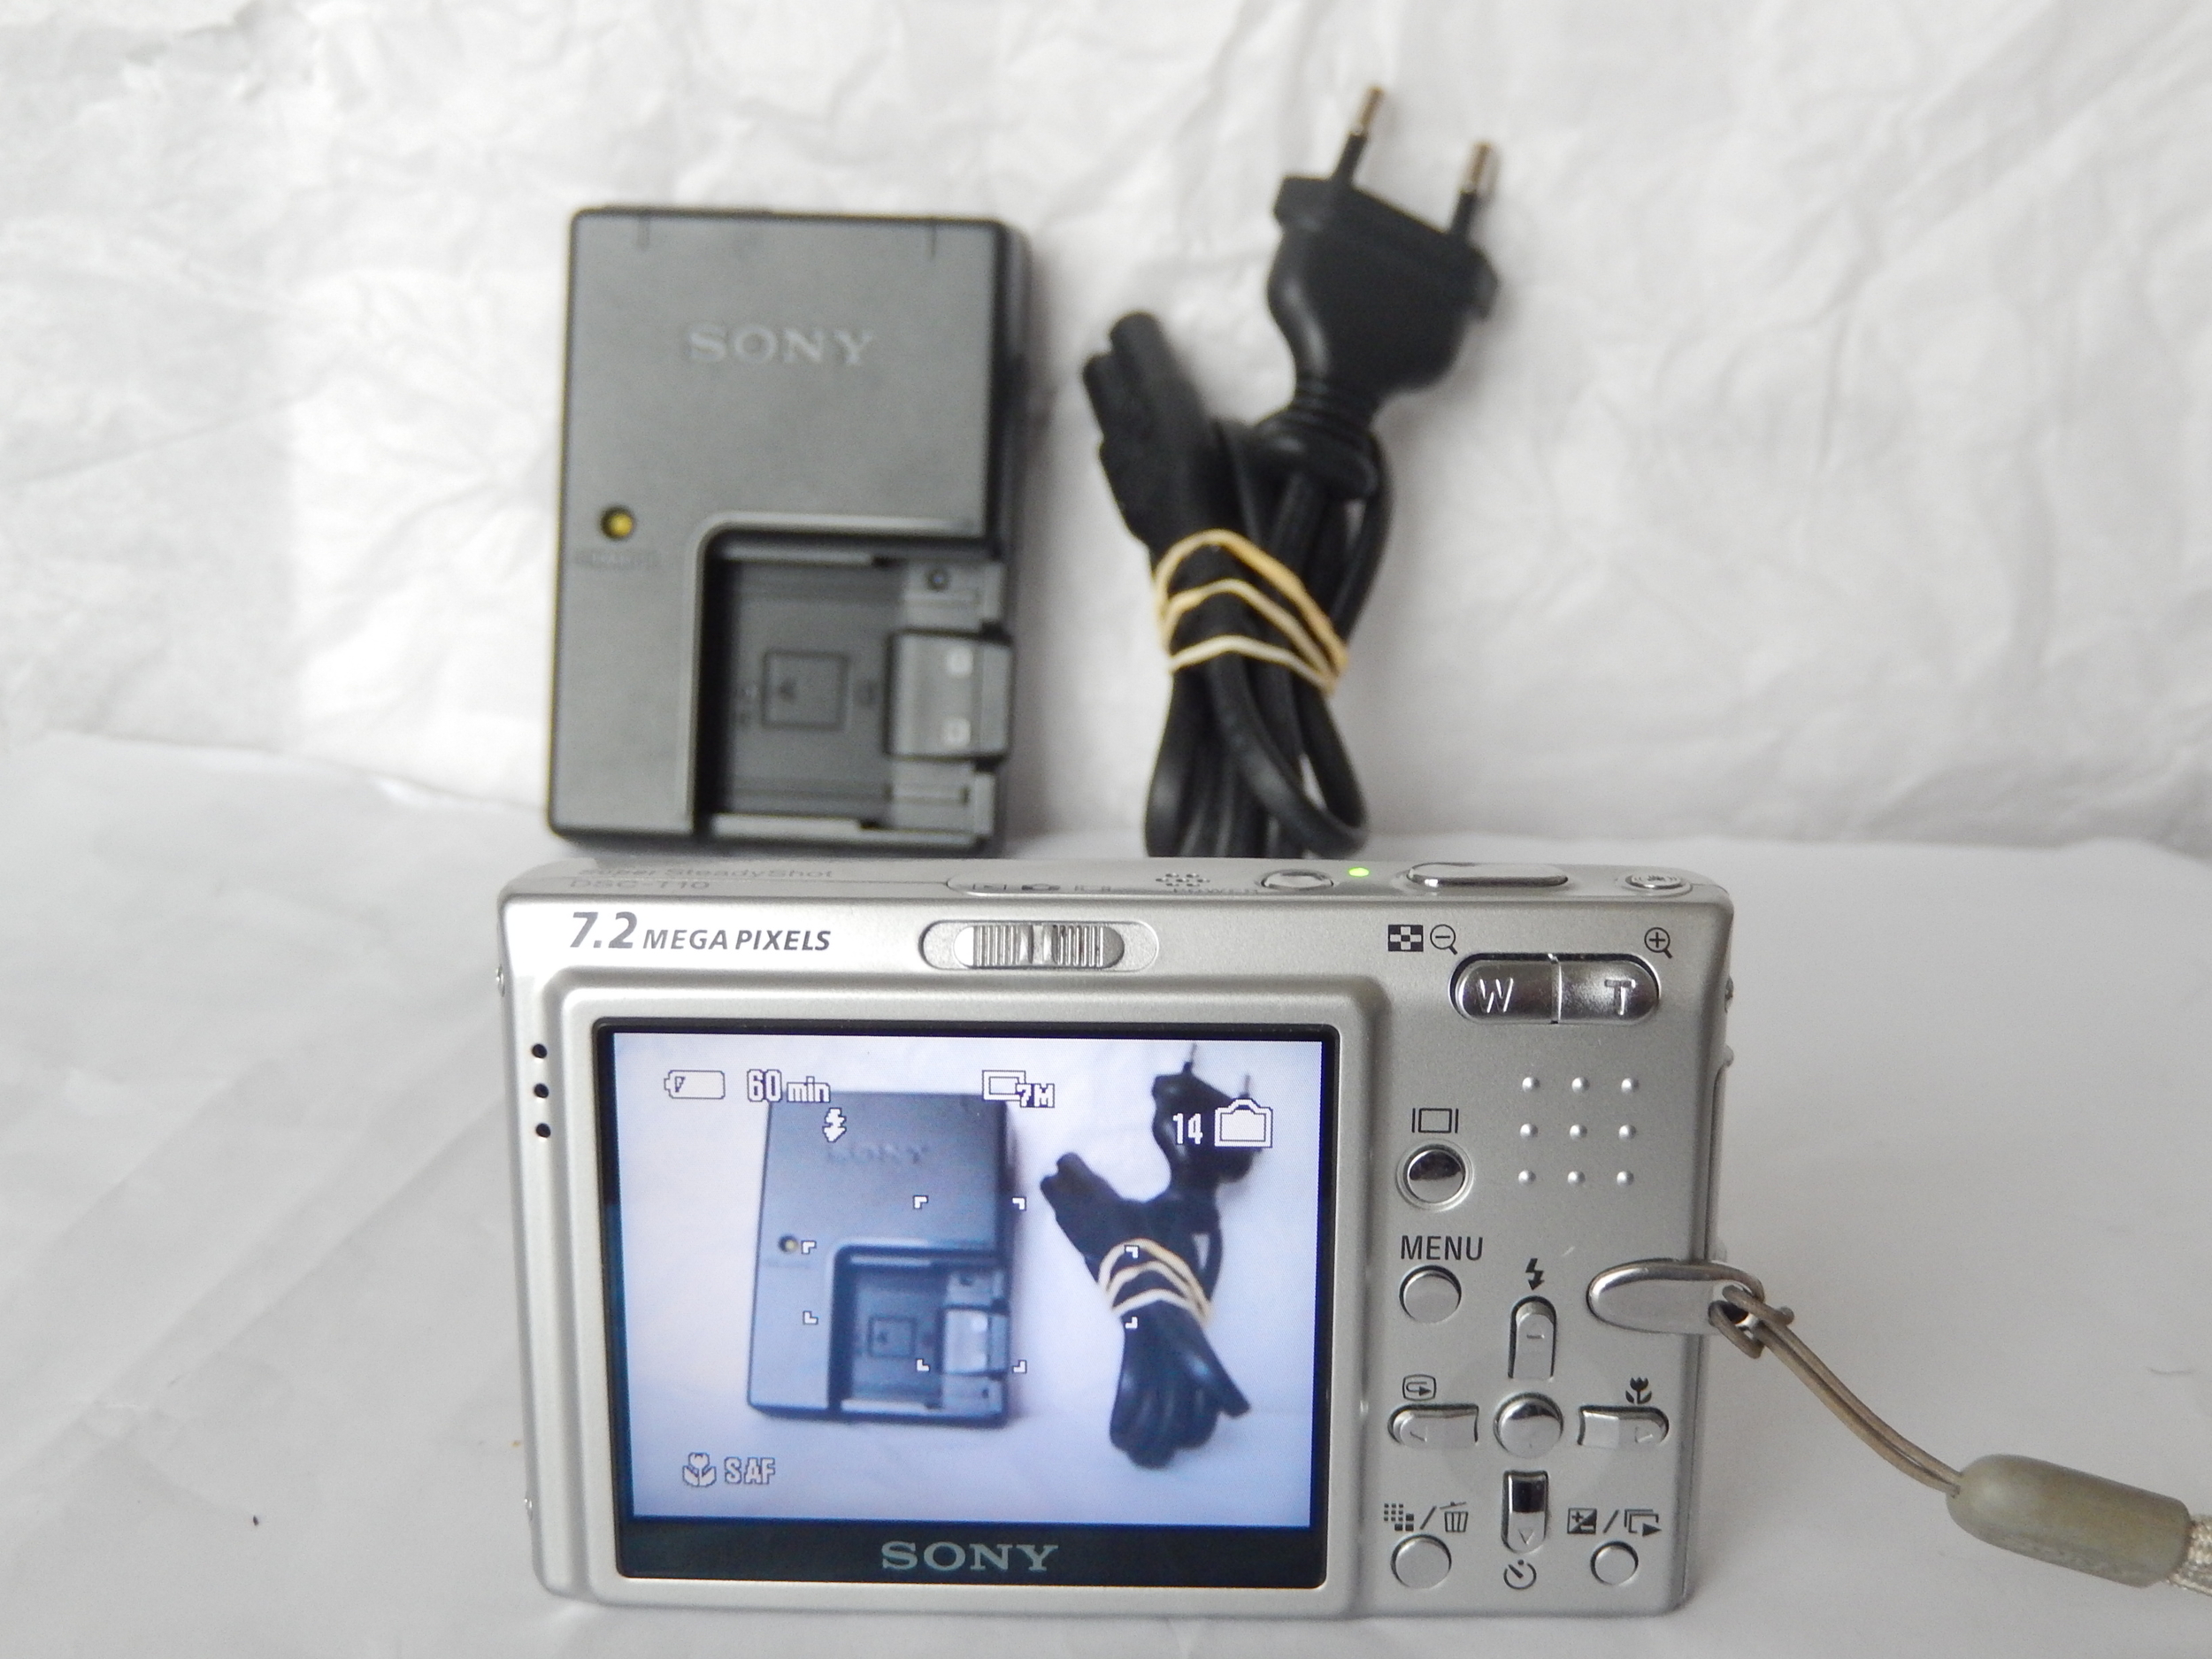 Sony CyberShot DSC-T10